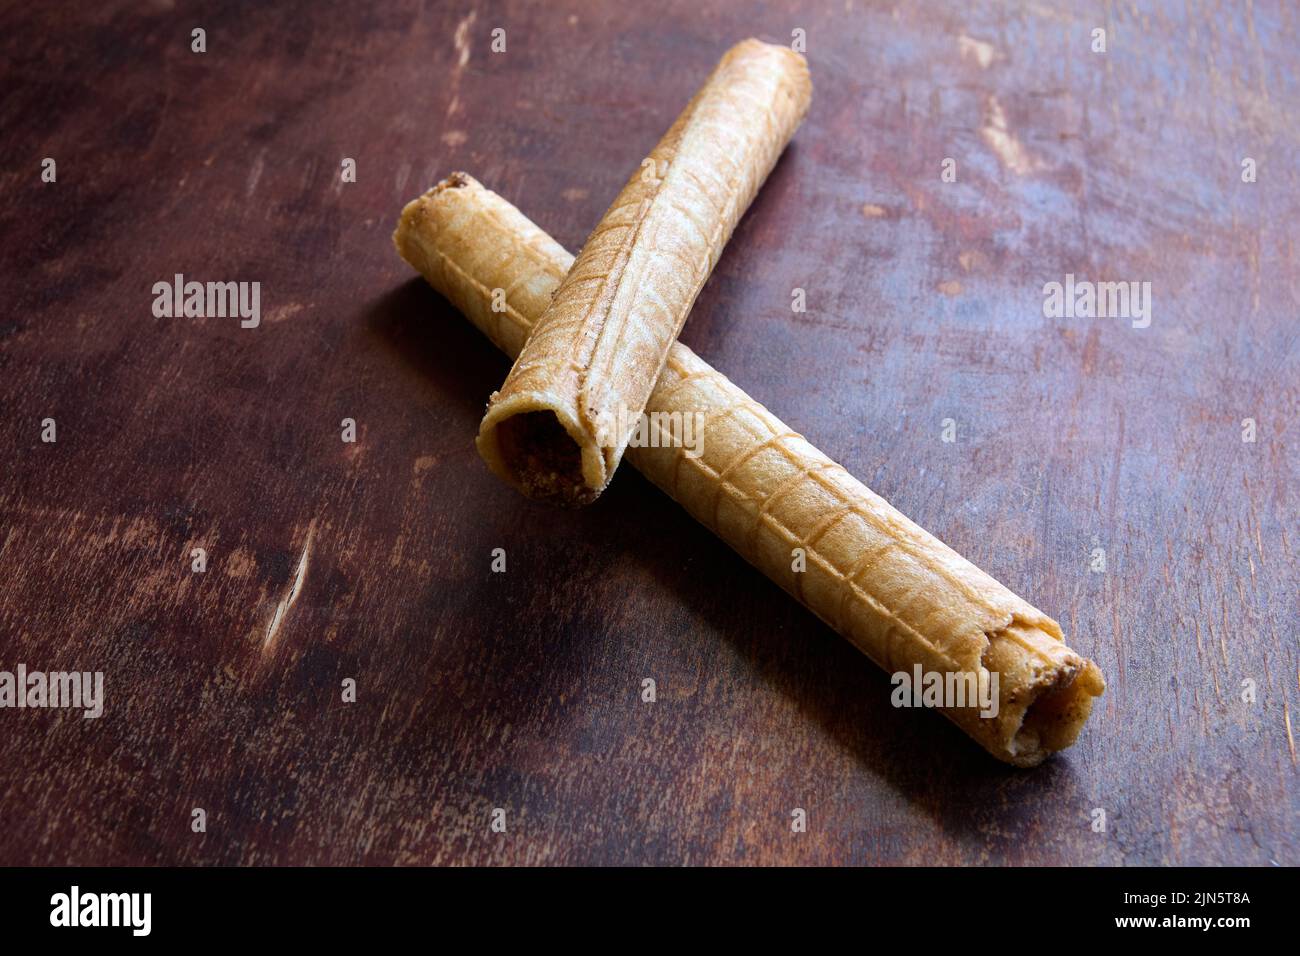 Los rollos de obleas rellenos de crema se encuentran encima de la mesa de madera de la cocina. Foto de stock